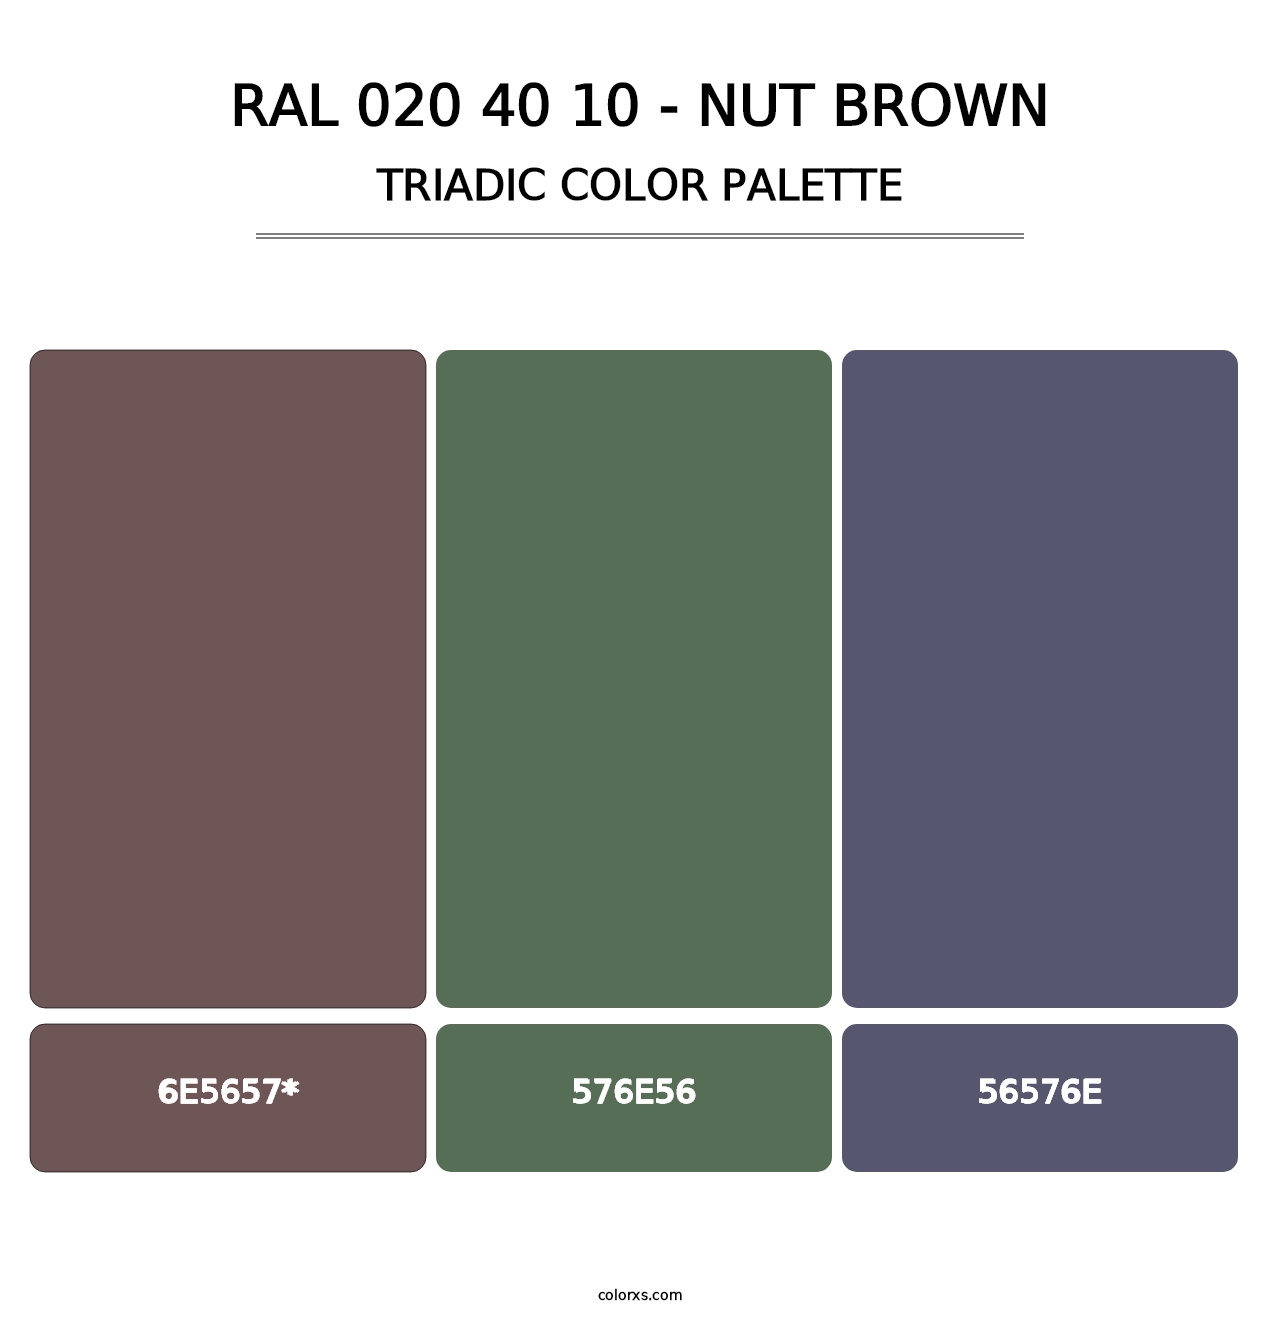 RAL 020 40 10 - Nut Brown - Triadic Color Palette